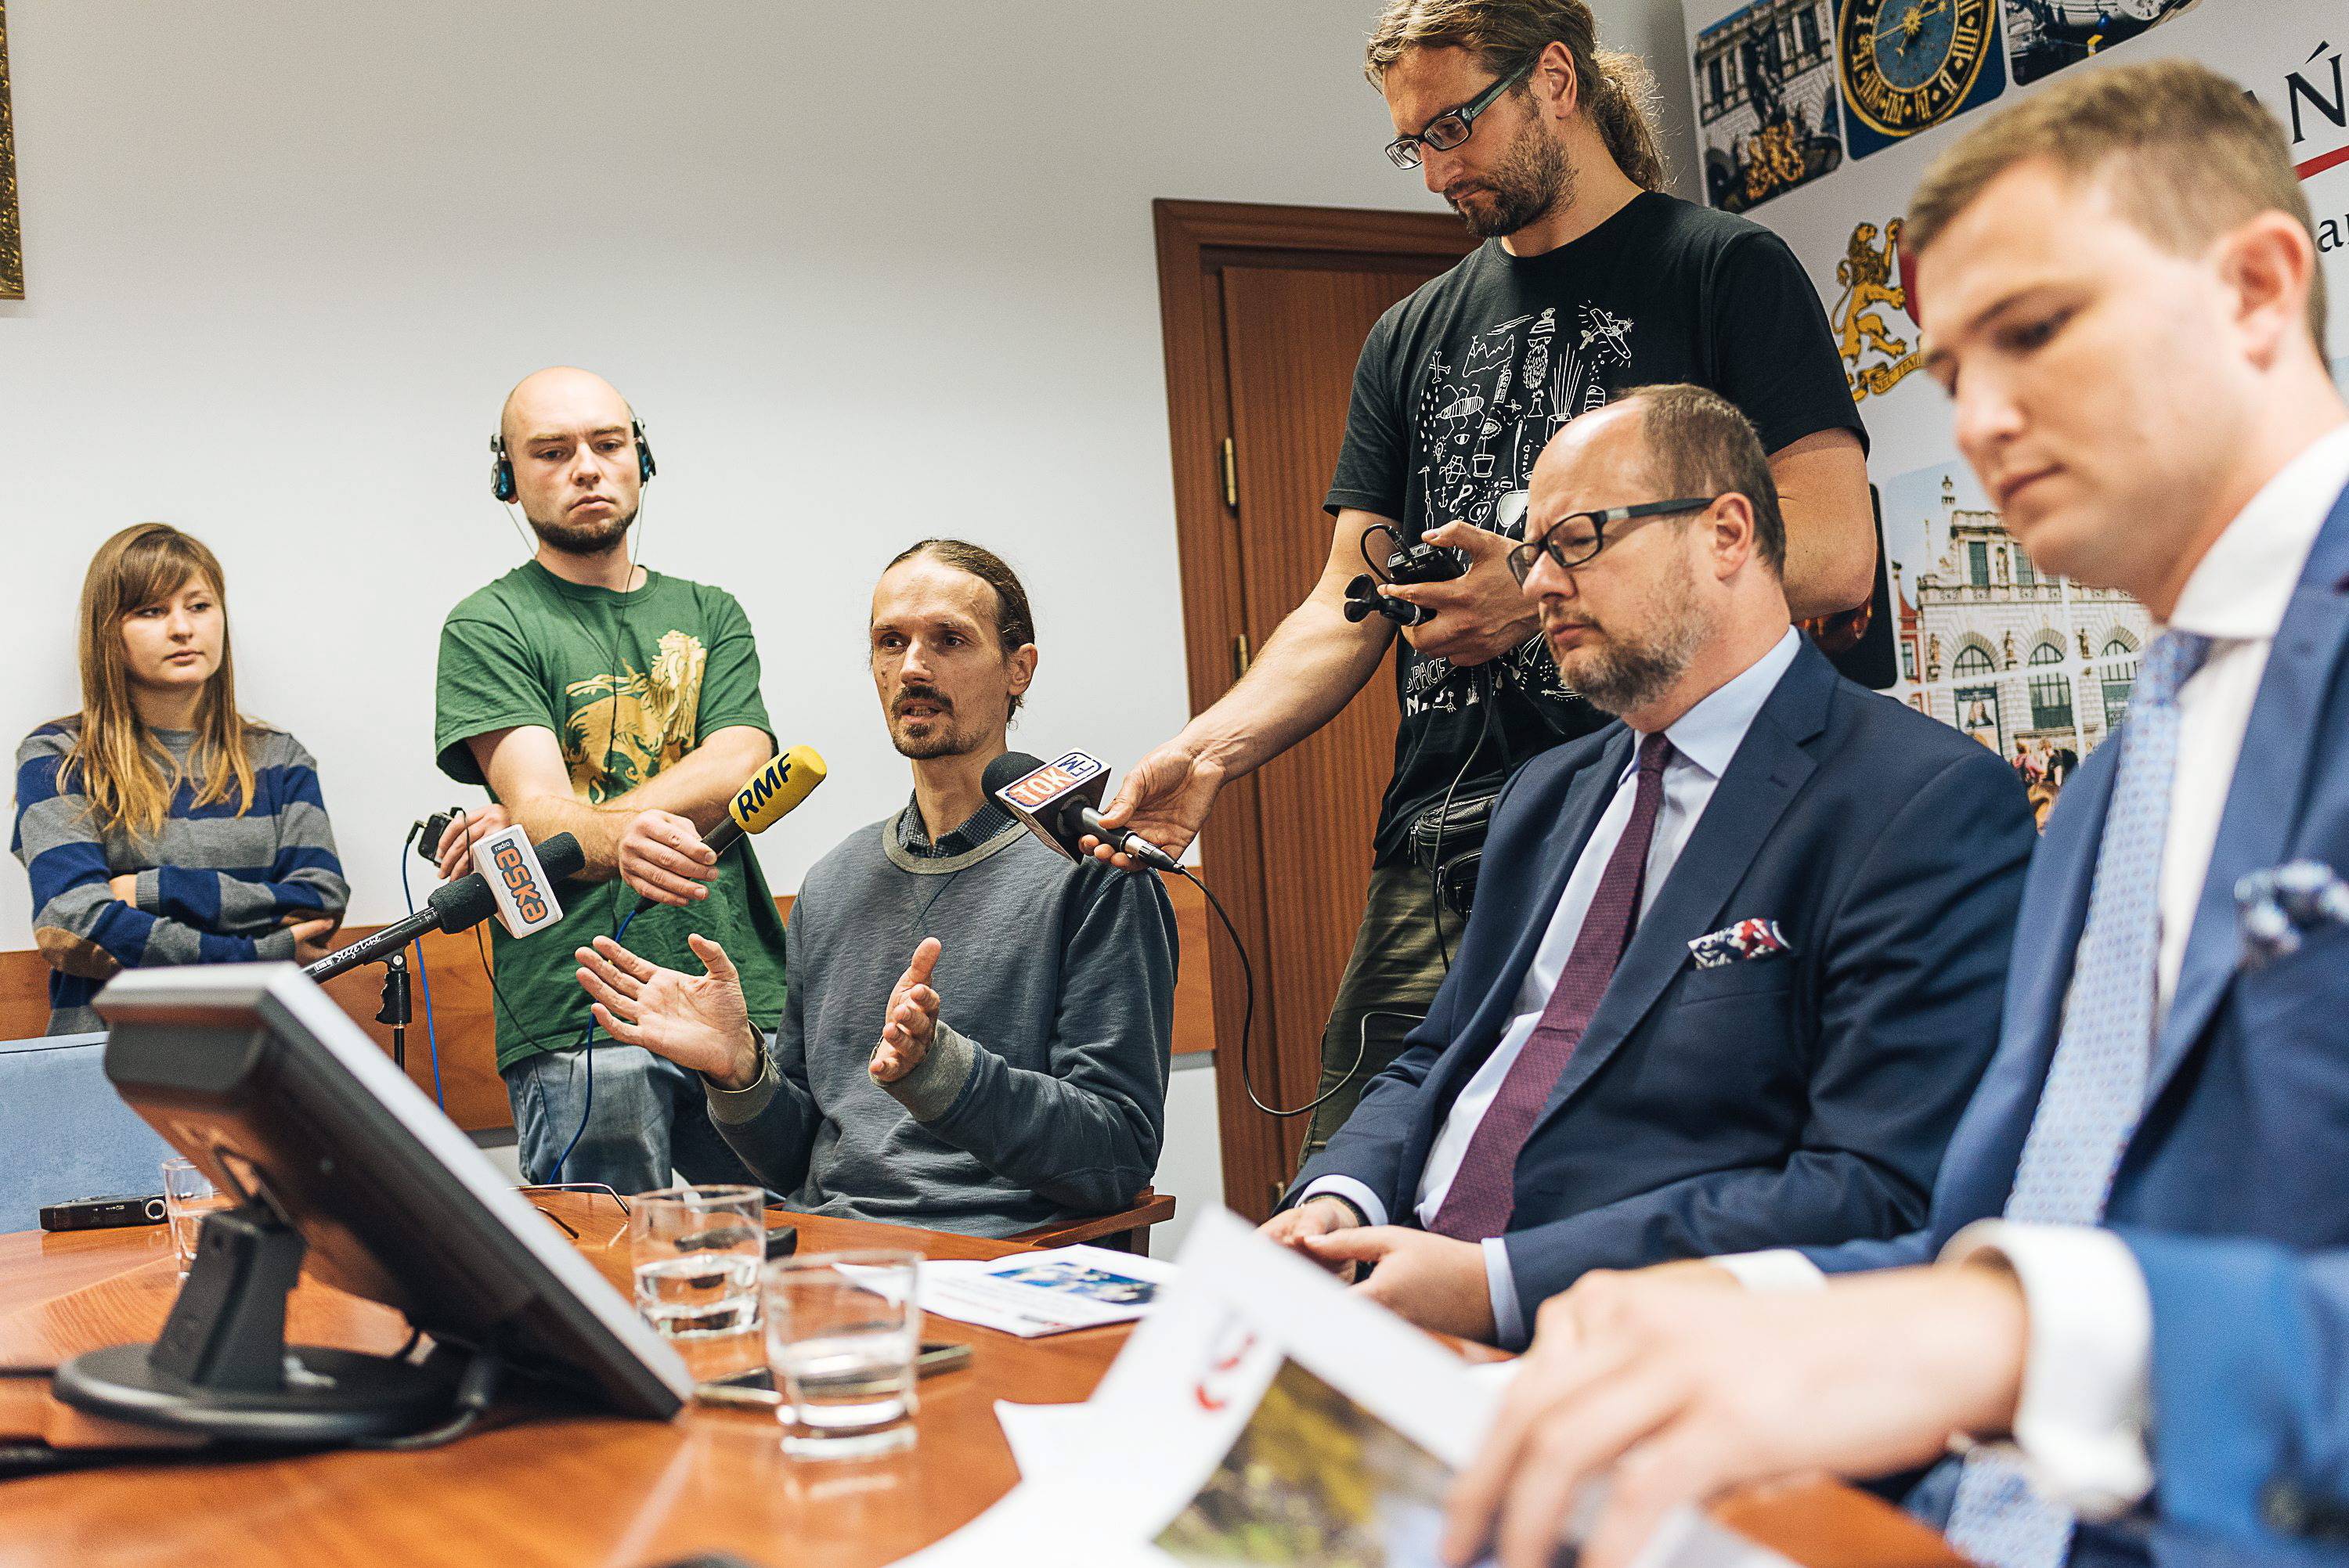 Paeł Adamowicz z młodymi ludźmi na konferencji prasowej